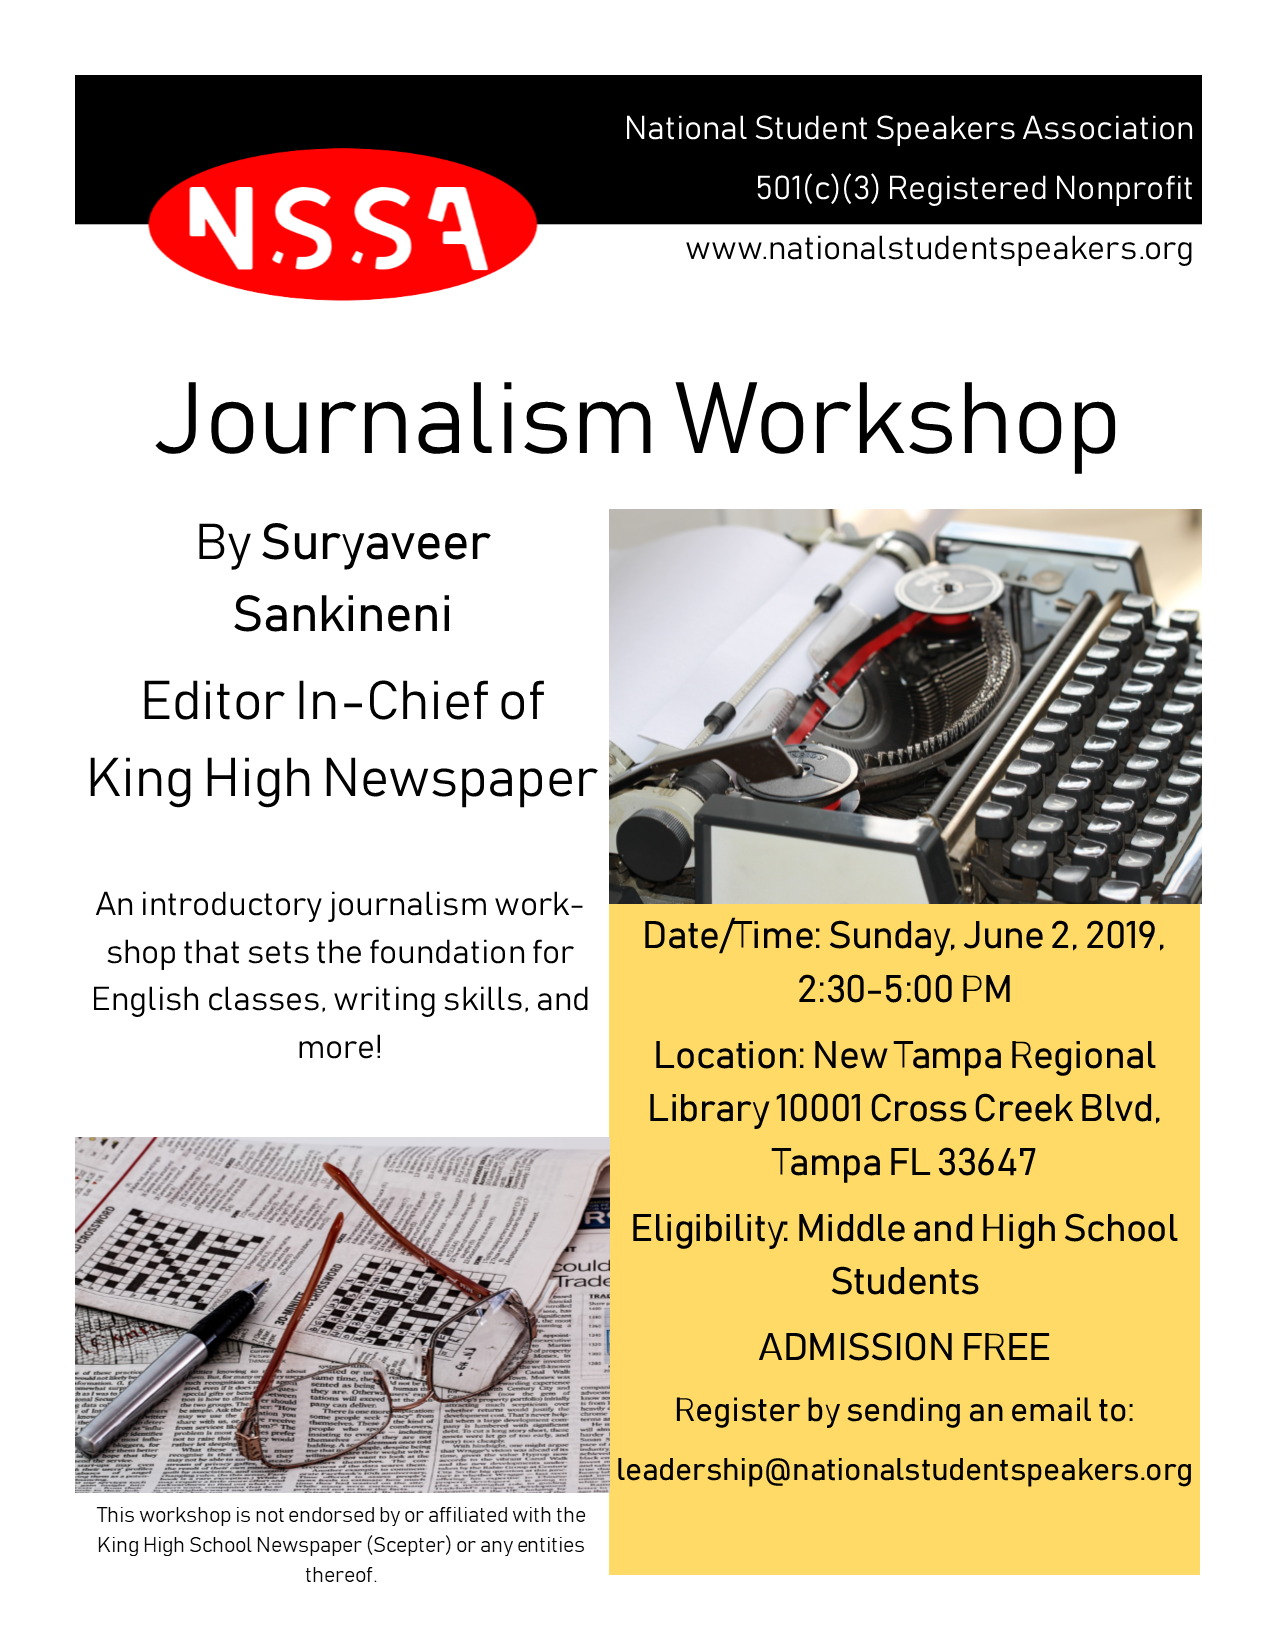 Journalism Workshop Flyer